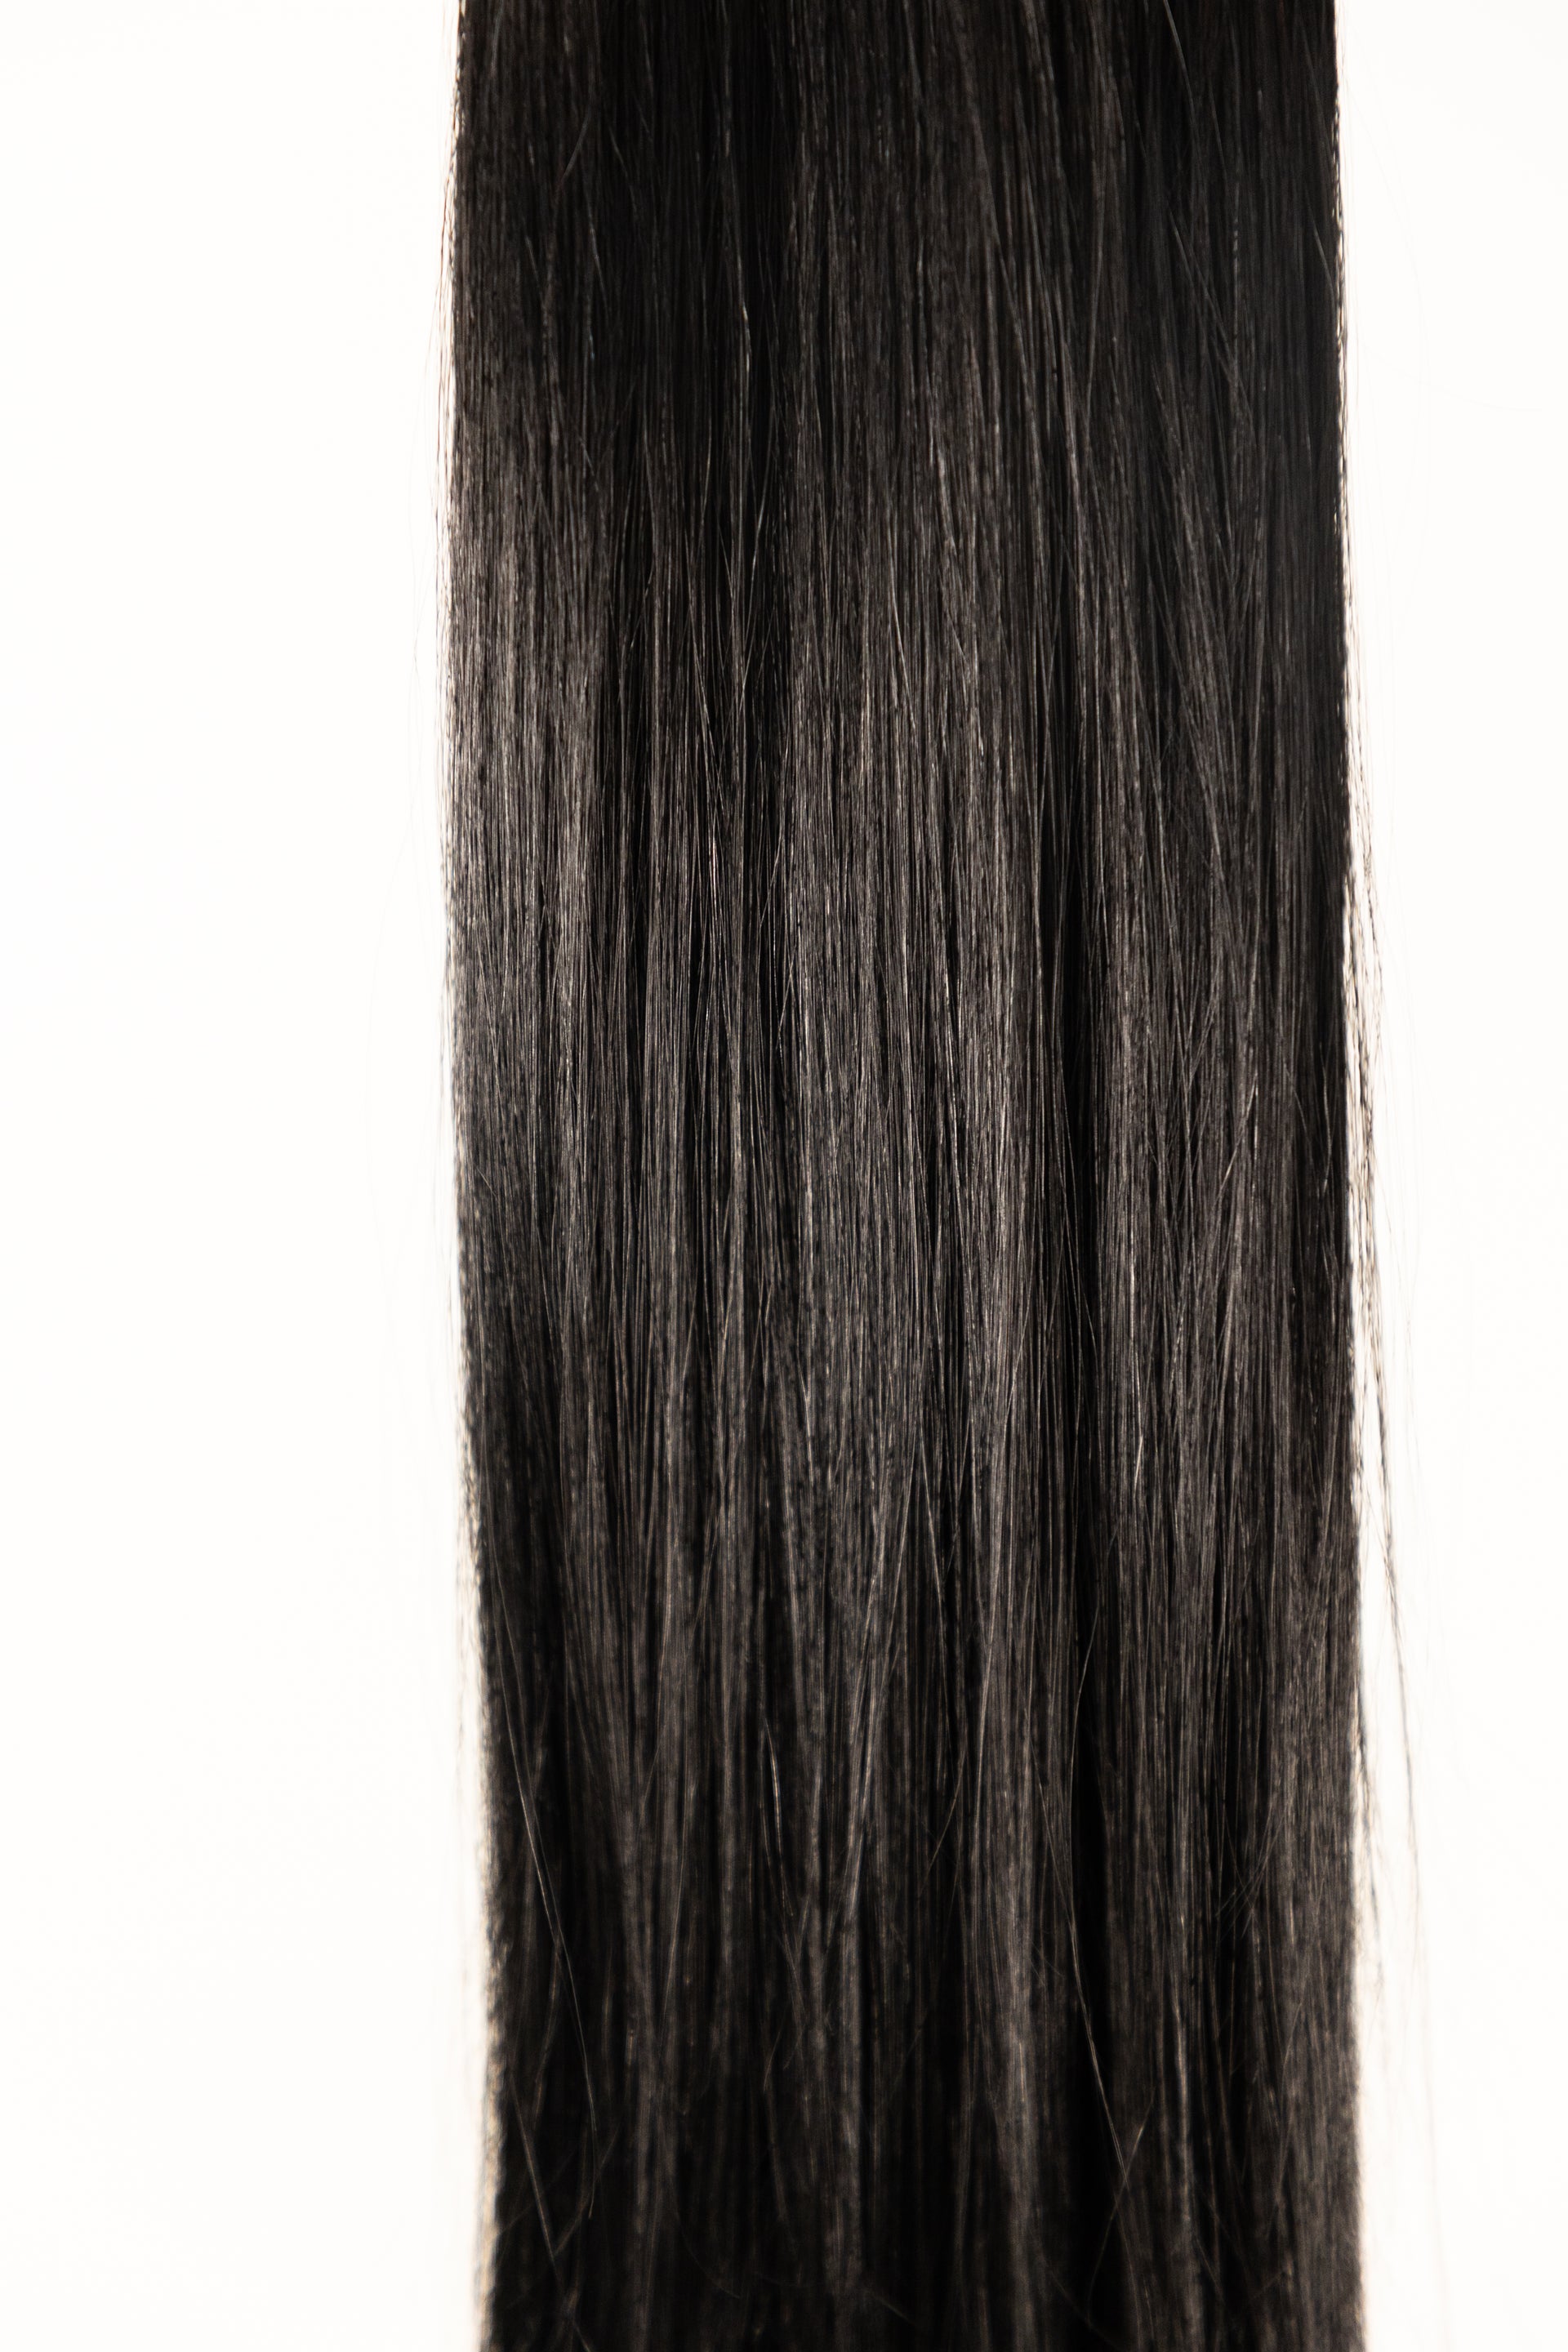 OFF BLACK #1B-2 European Virgin Remy Human Hair, Bulk